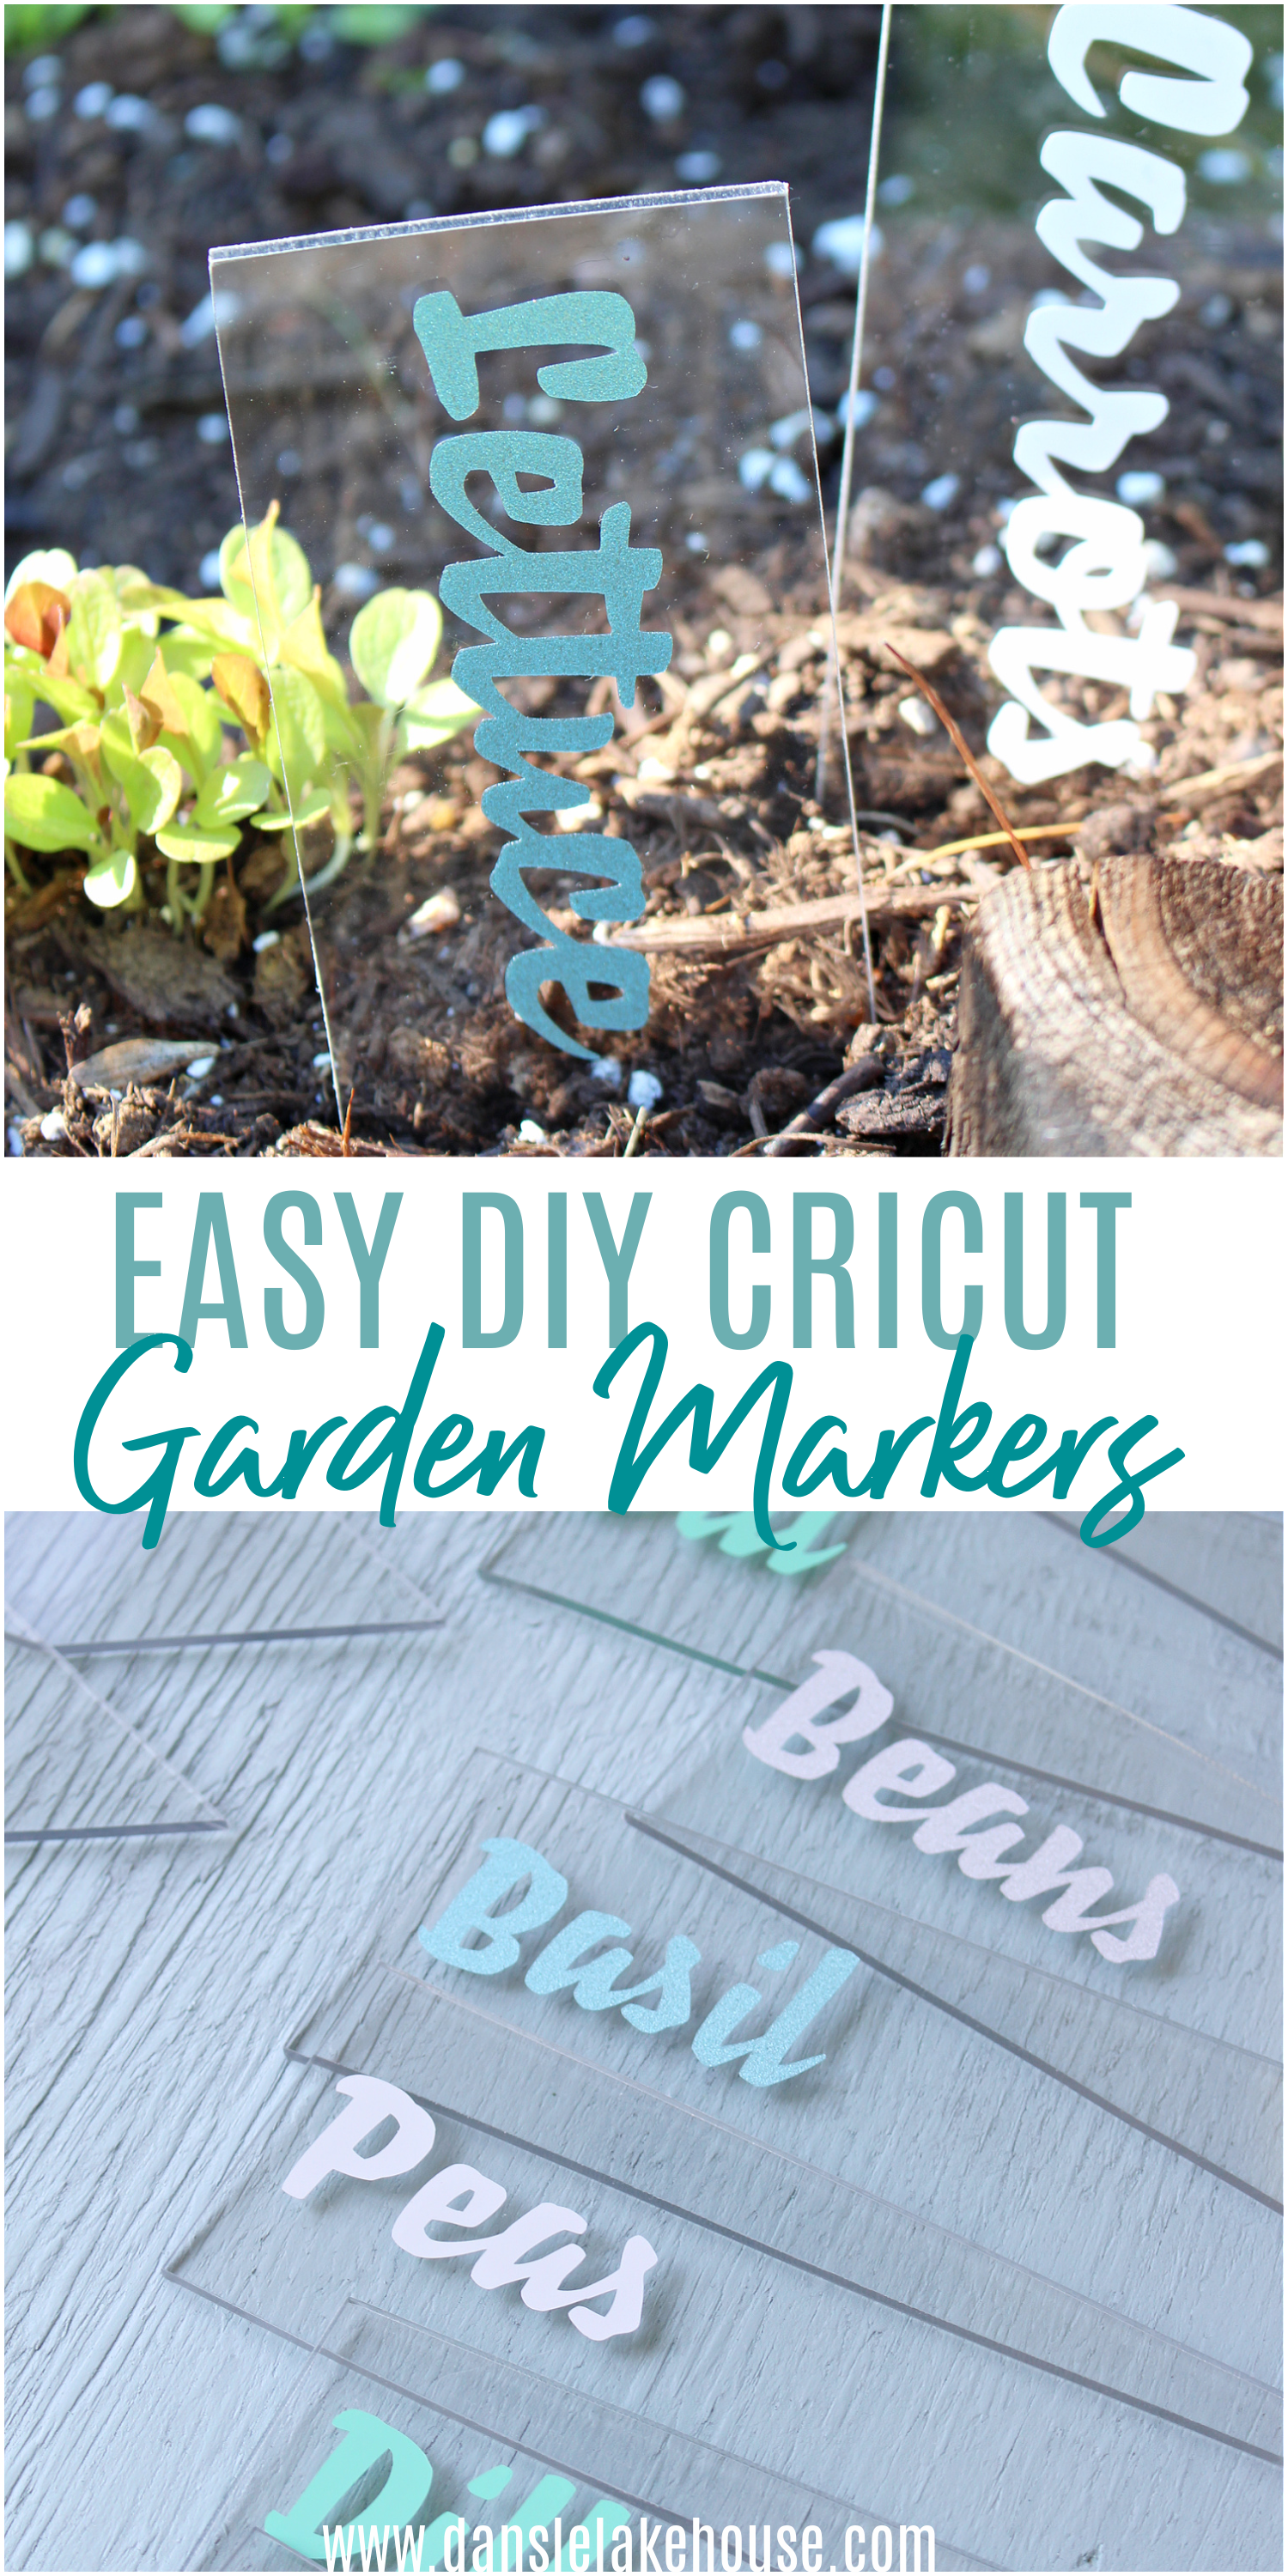 Easy DIY Cricut Garden Markers